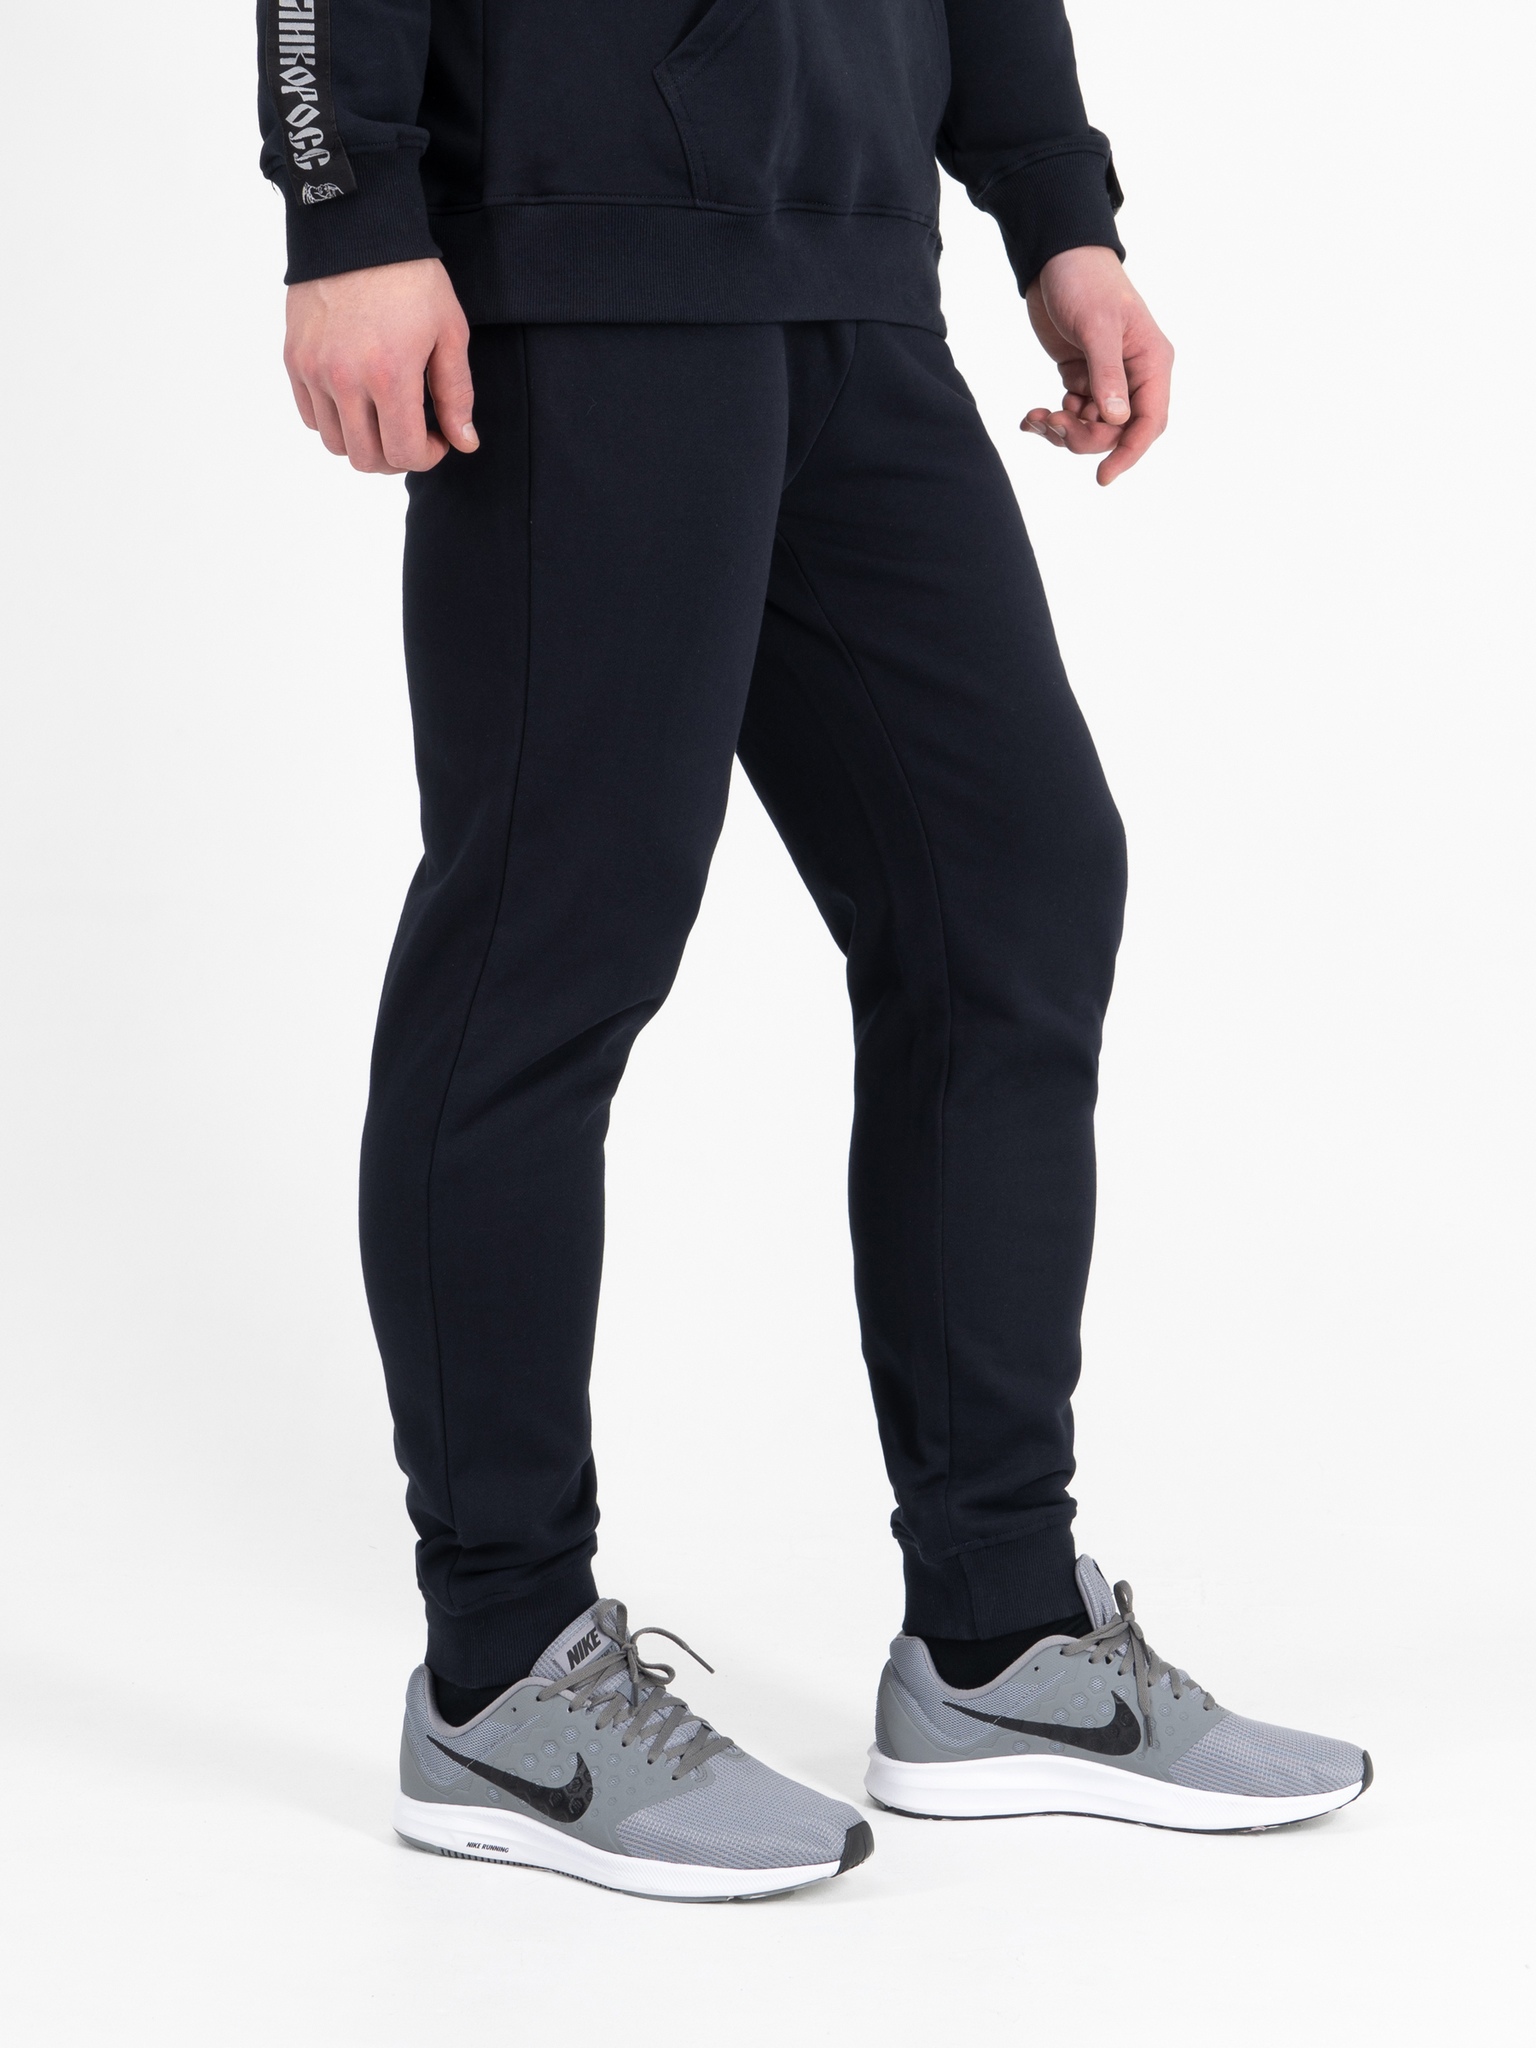 фото Спортивные брюки мужские великоросс bm синие 54 ru